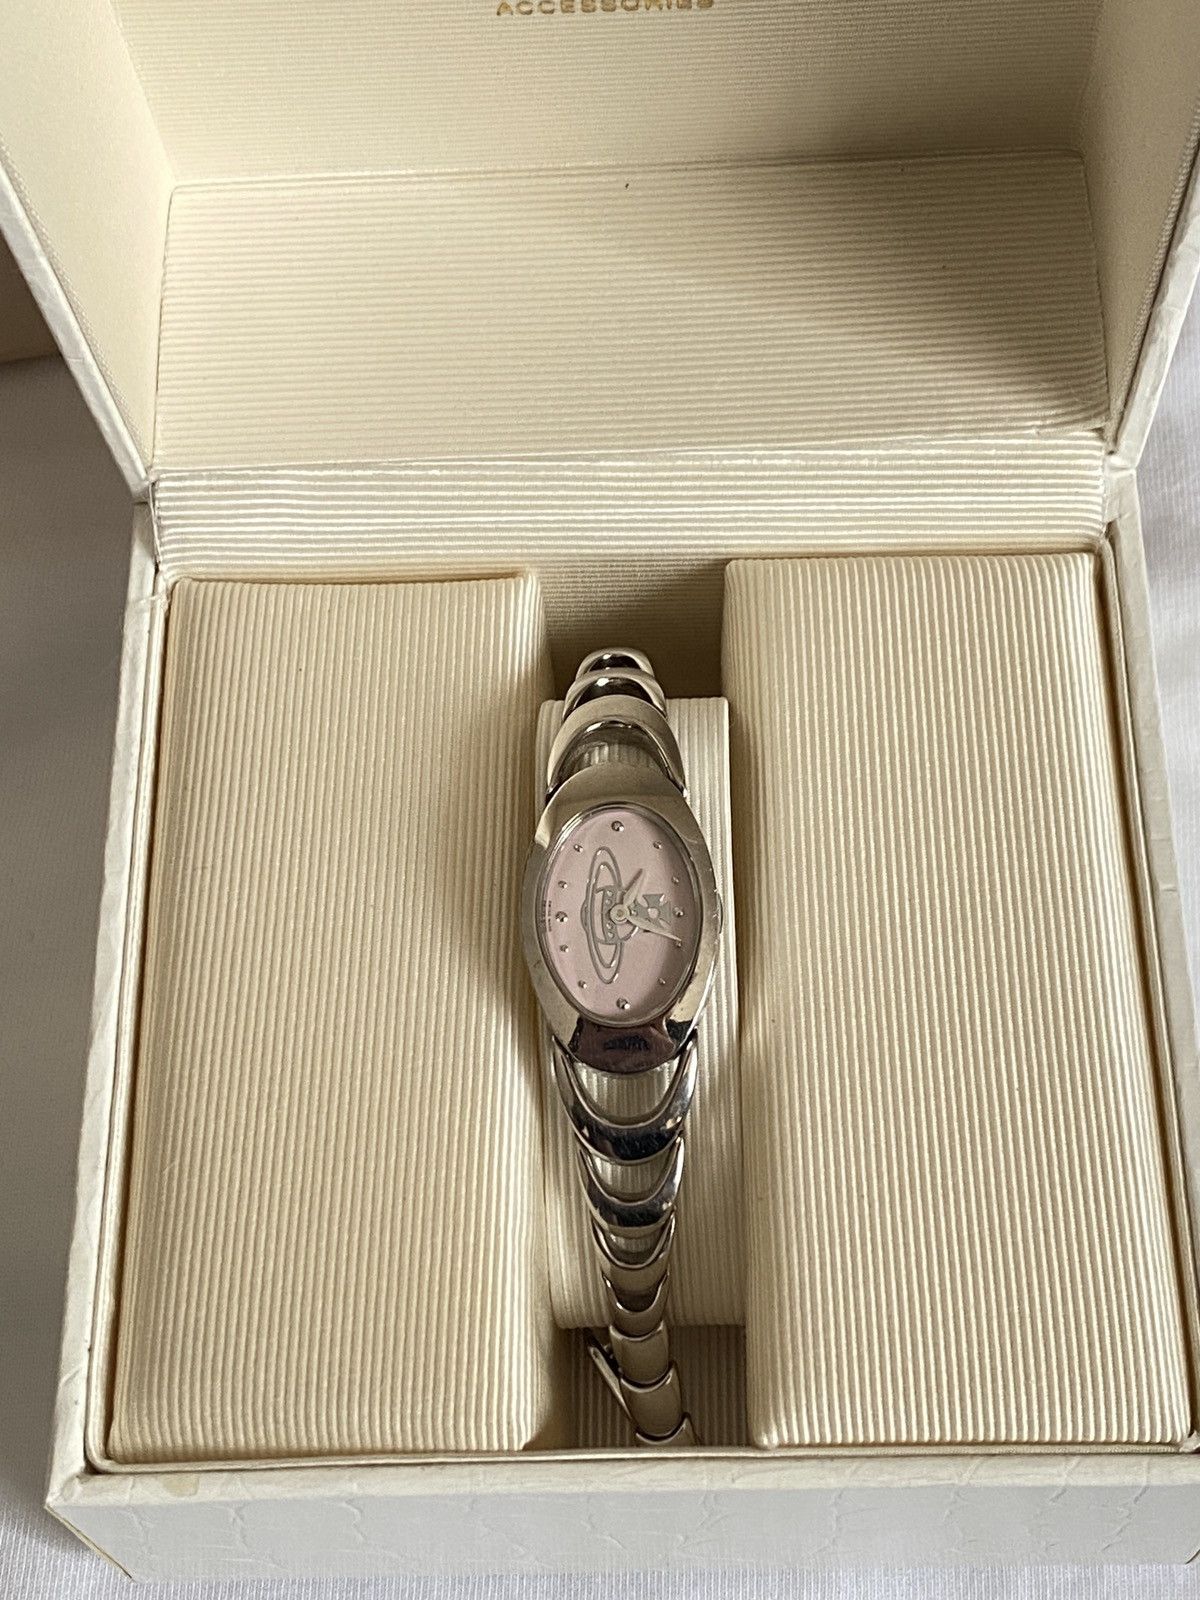 Pre-owned Vivienne Westwood Watch Orb In Silver